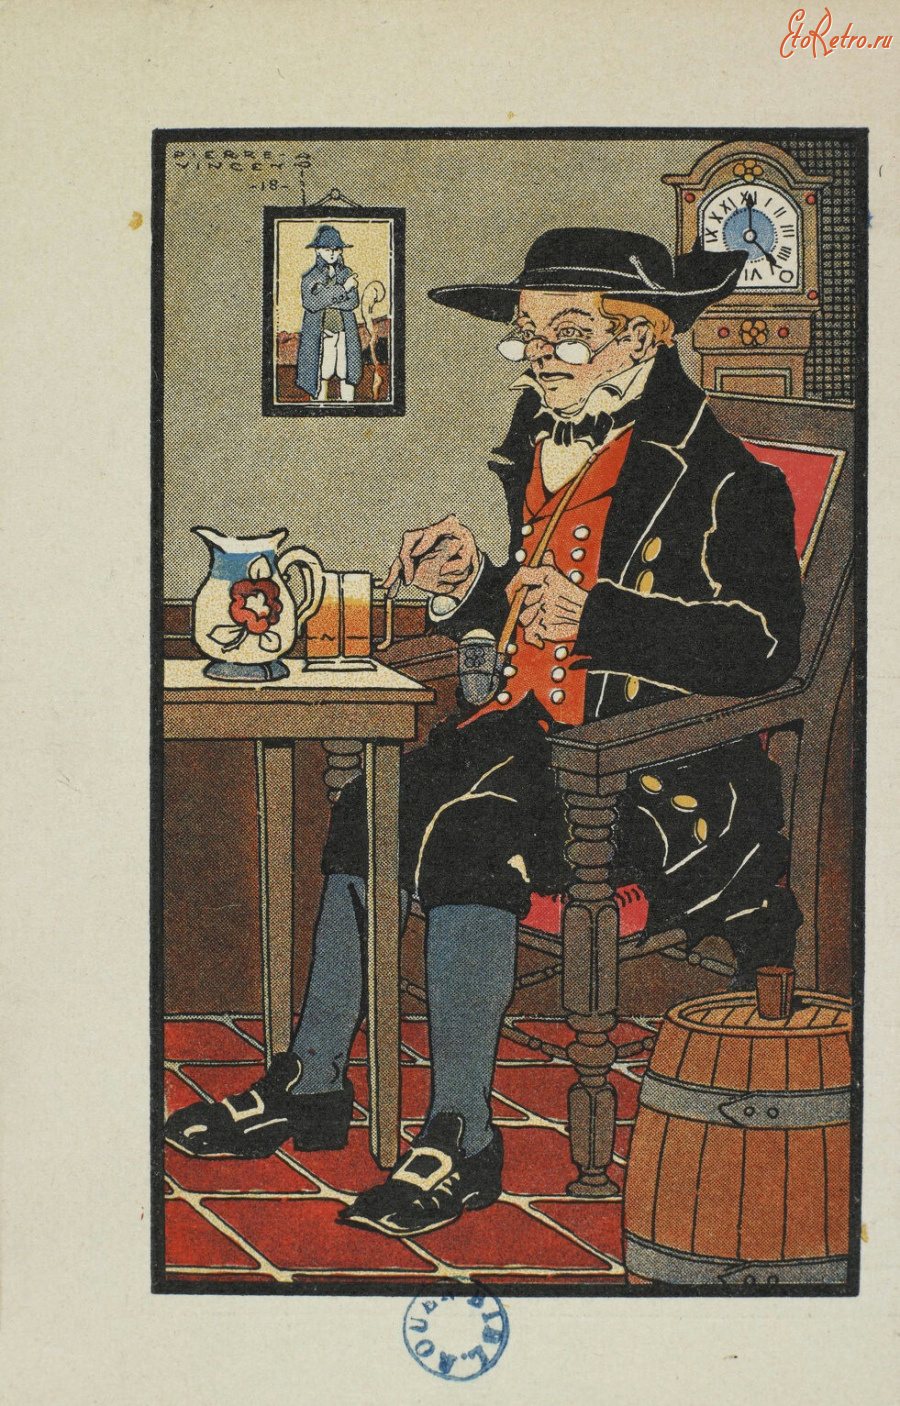 Ретро мода - Эльзасец с кружкой пива и трубкой